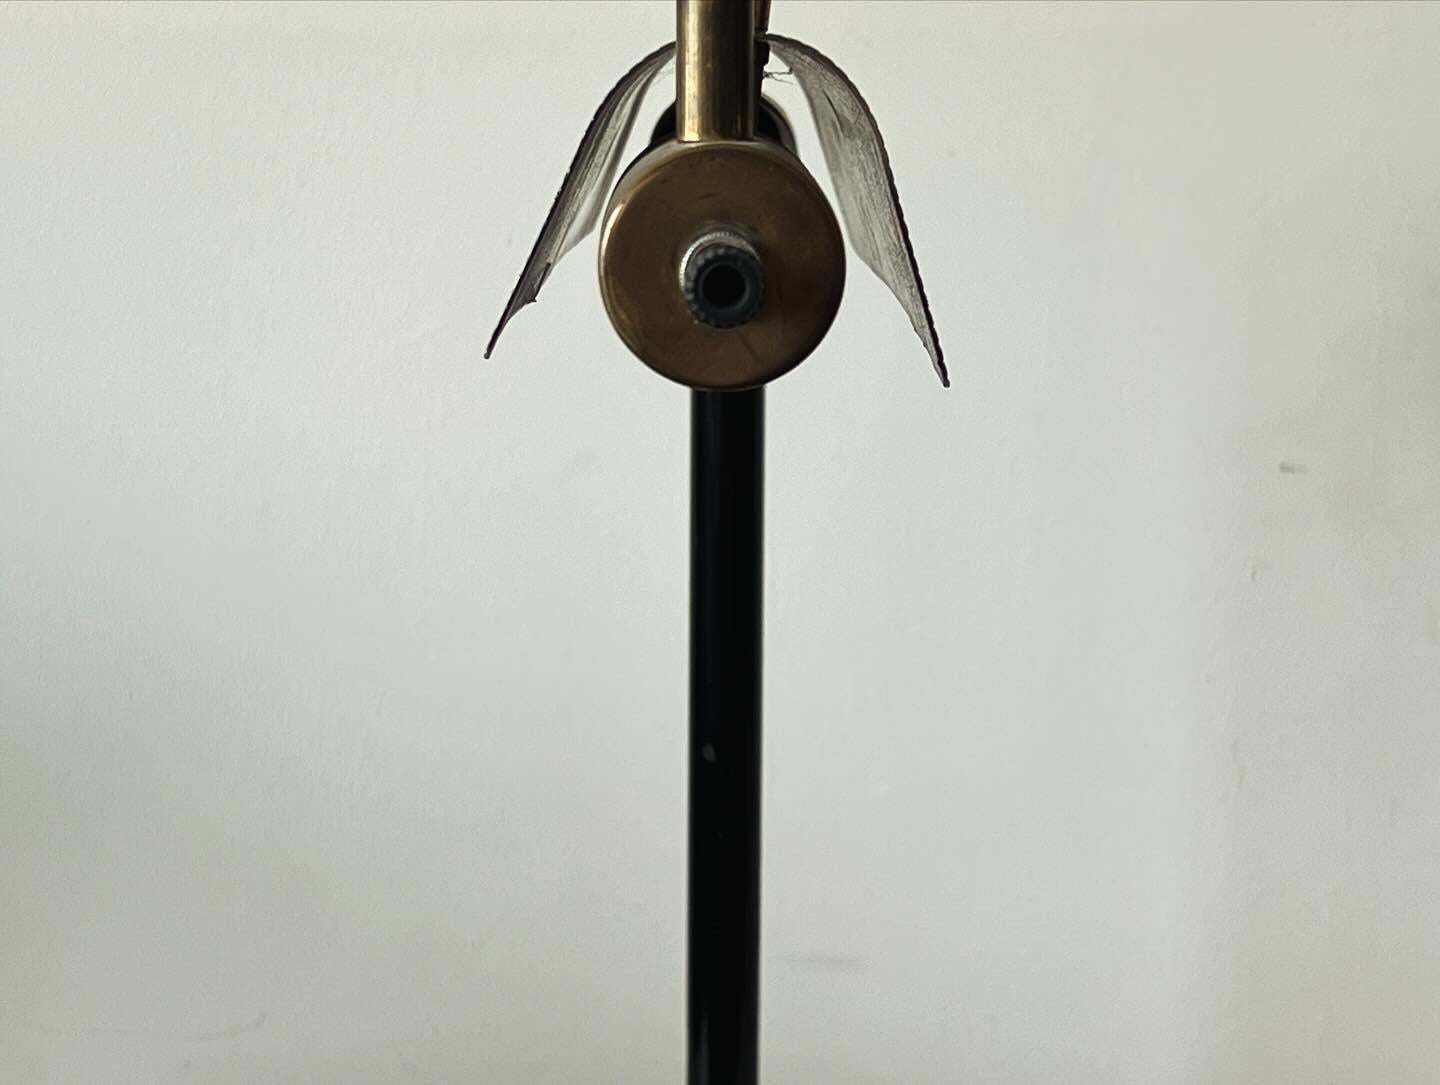 Eine seltene  und ungewöhnliche modernistische Lampe von Peter Pfisterer, ca. 1940er Jahre. Der Schirm ist schwenkbar und in der Höhe verstellbar, um das Licht auszurichten. Hergestellt aus Messing und lackiertem Aluminium. Der in der Schweiz